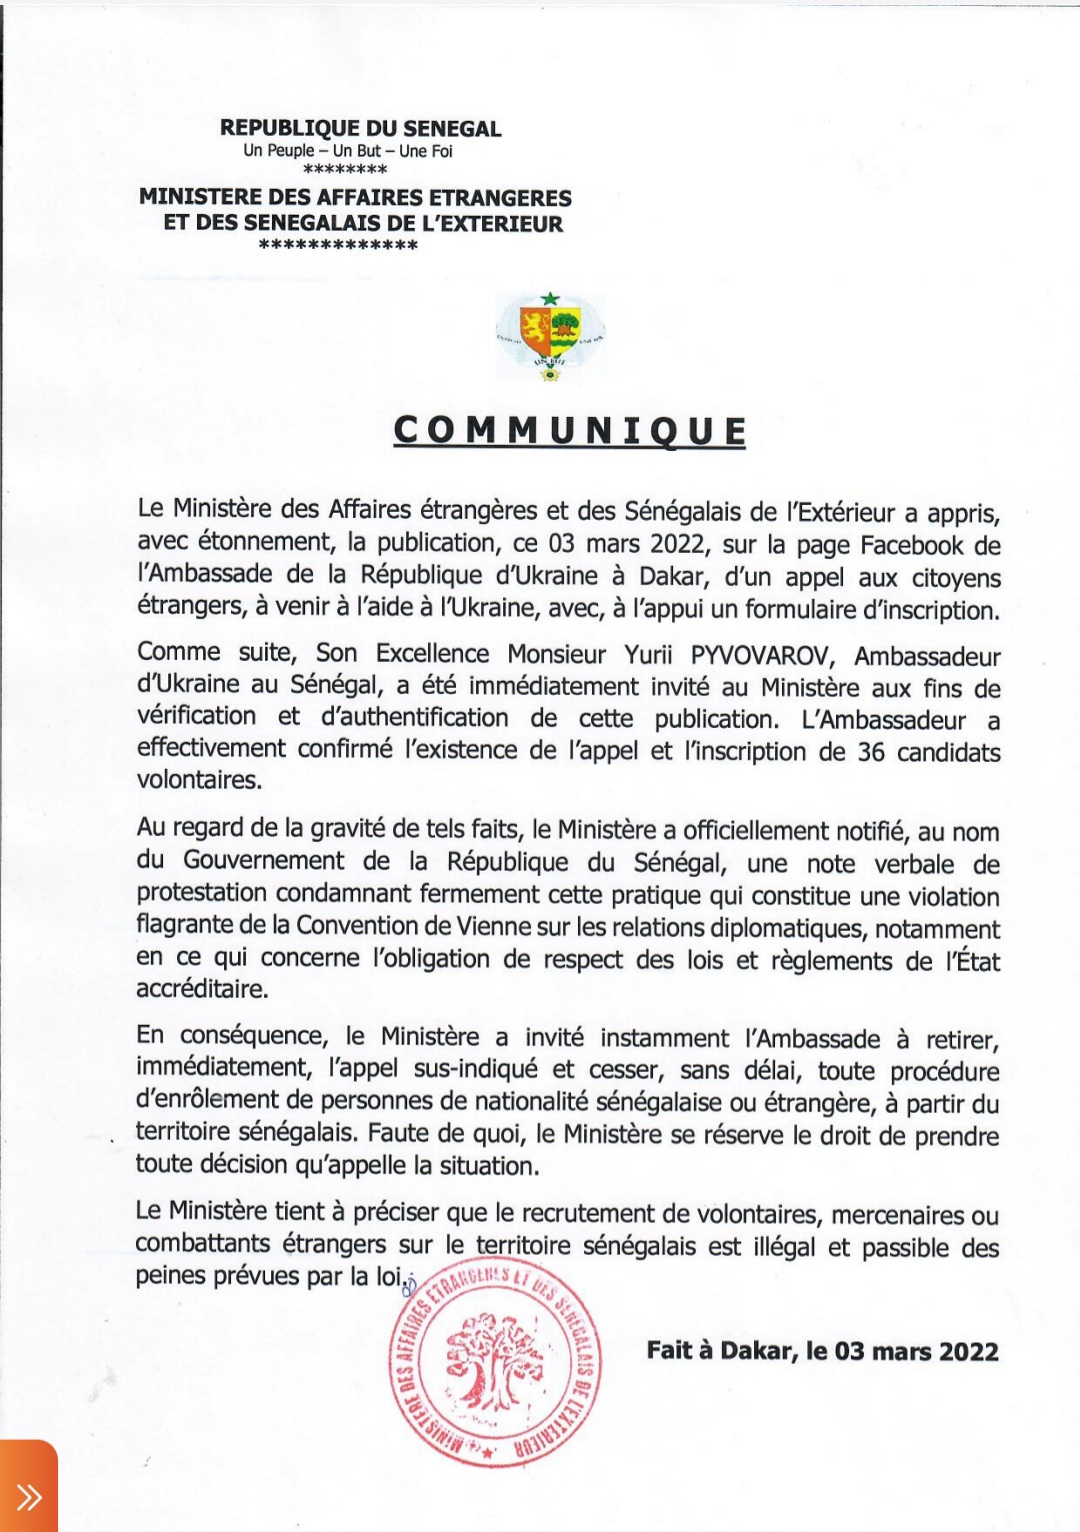 Recrutement de citoyens sénégalais pour combattre en Ukraine : le Ministre des affaires étrangères adresse une note de protestation à l’Ambassadeur